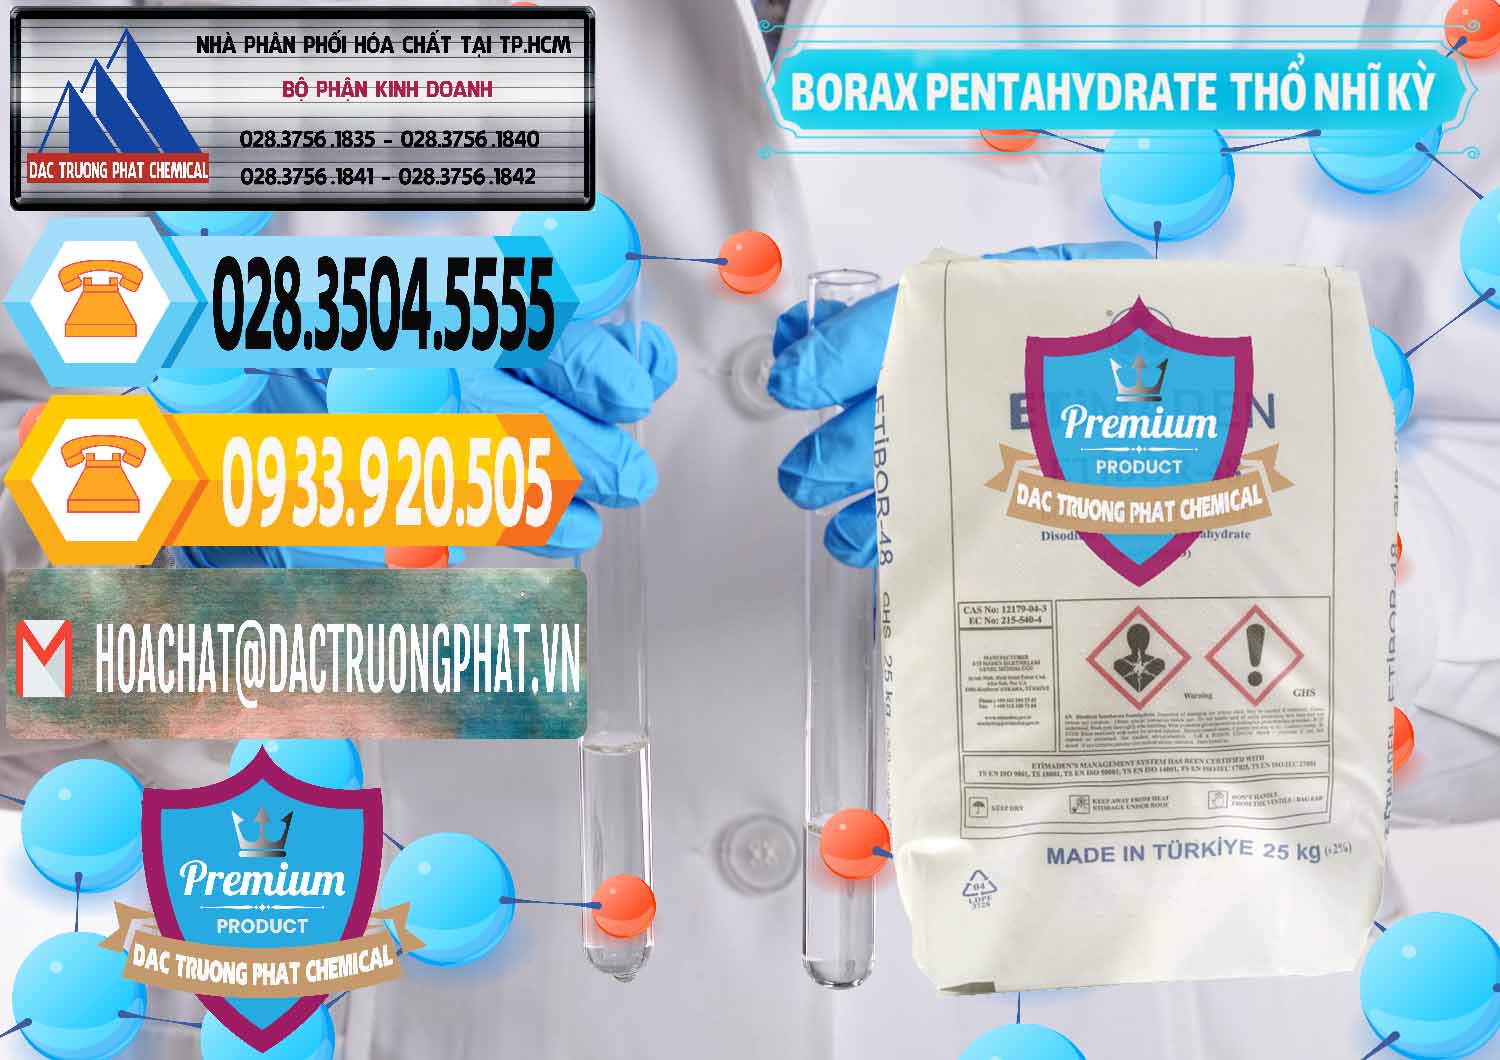 Nơi bán và cung cấp Borax Pentahydrate Thổ Nhĩ Kỳ Turkey - 0431 - Cung cấp _ kinh doanh hóa chất tại TP.HCM - hoachattayrua.net